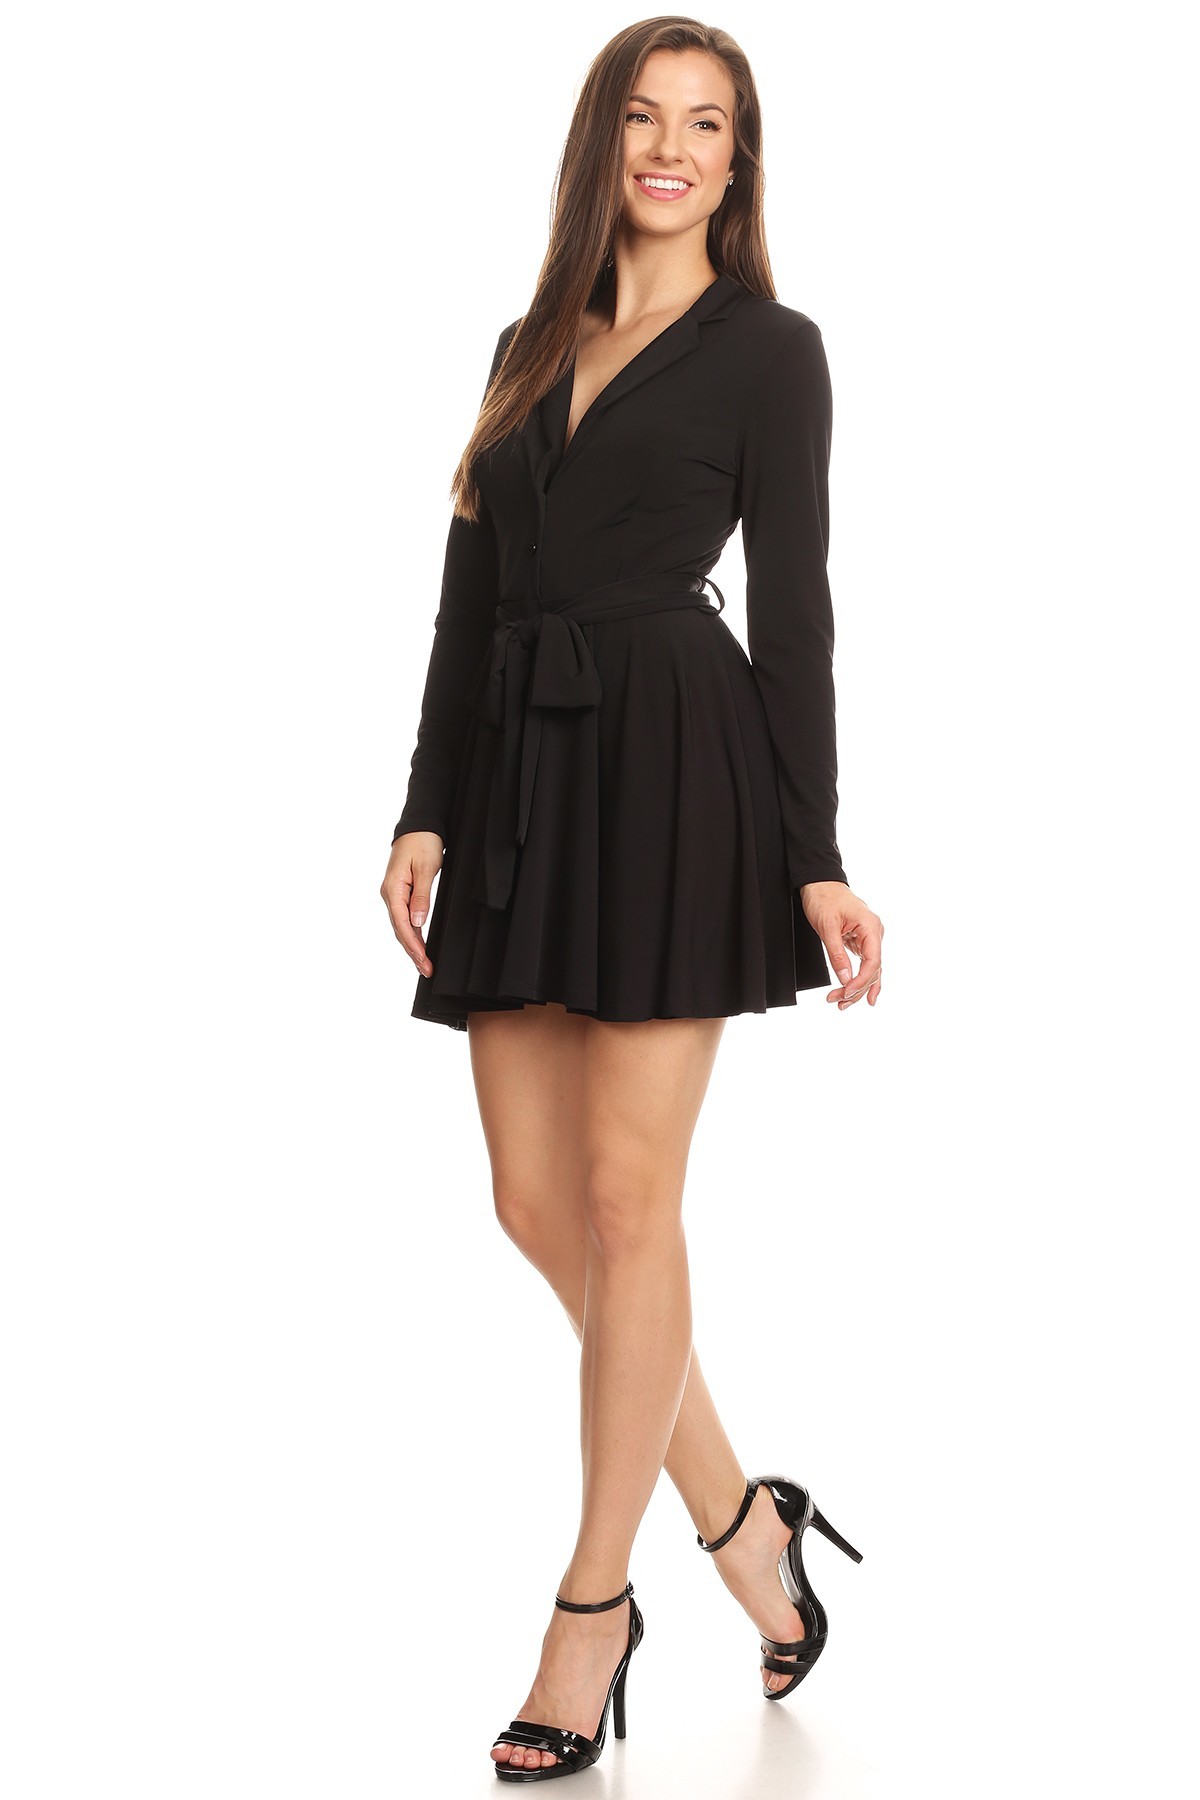 Wall Street Fashion > Dresses > #5713SO − LAShowroom.com